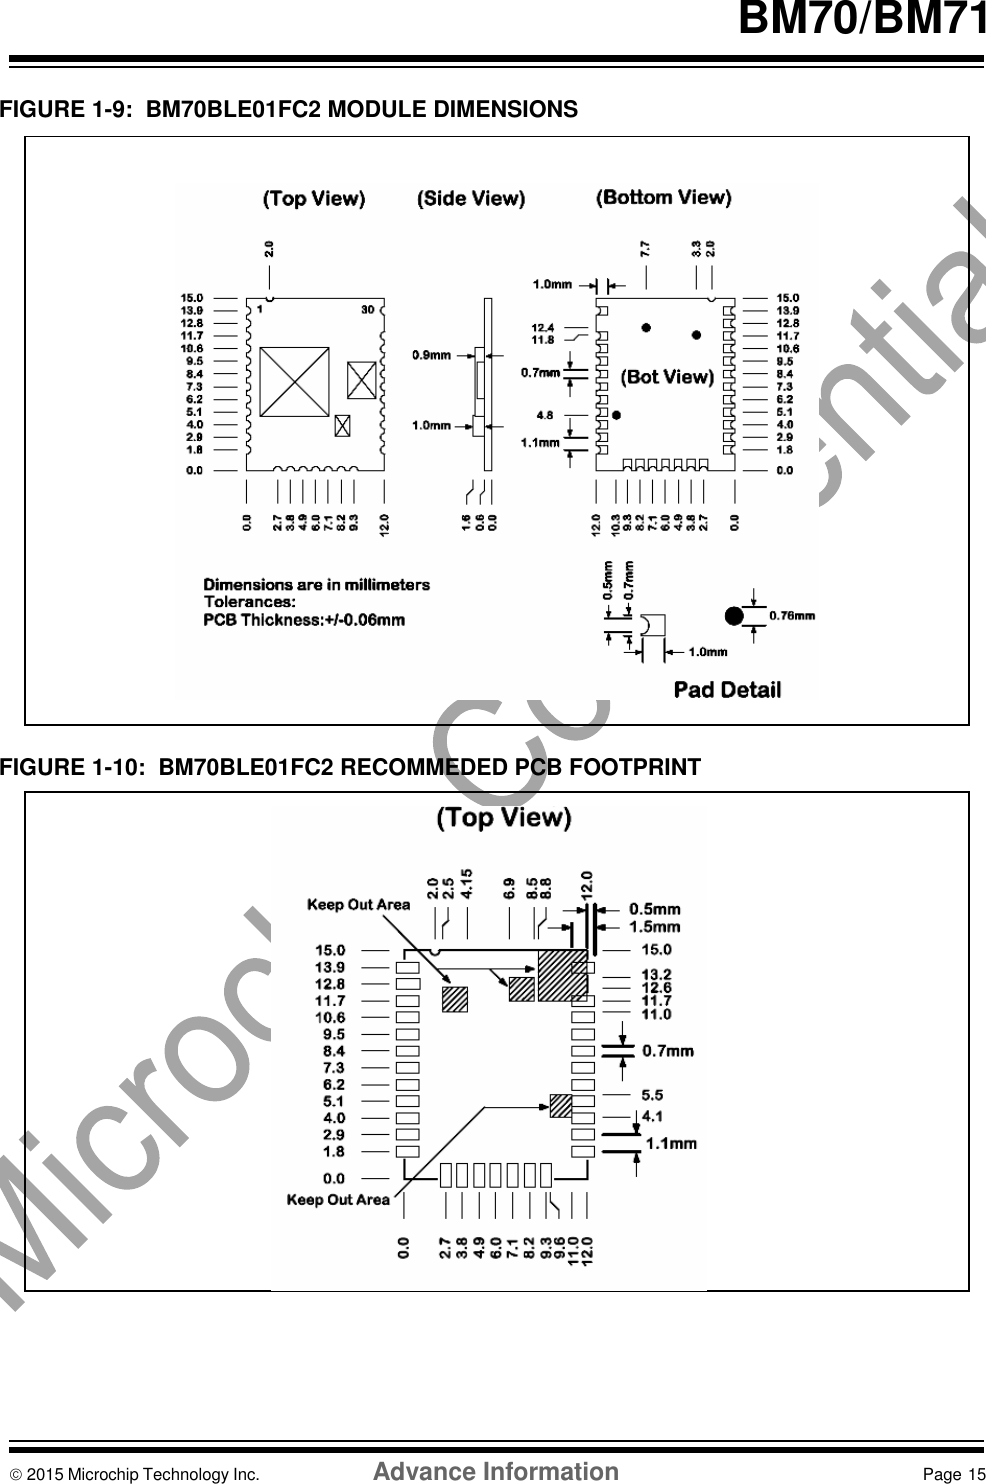     BM70/BM71   FIGURE 1-9:  BM70BLE01FC2 MODULE DIMENSIONS                         FIGURE 1-10:  BM70BLE01FC2 RECOMMEDED PCB FOOTPRINT                       2015 Microchip Technology Inc.  Advance Information  Page 15